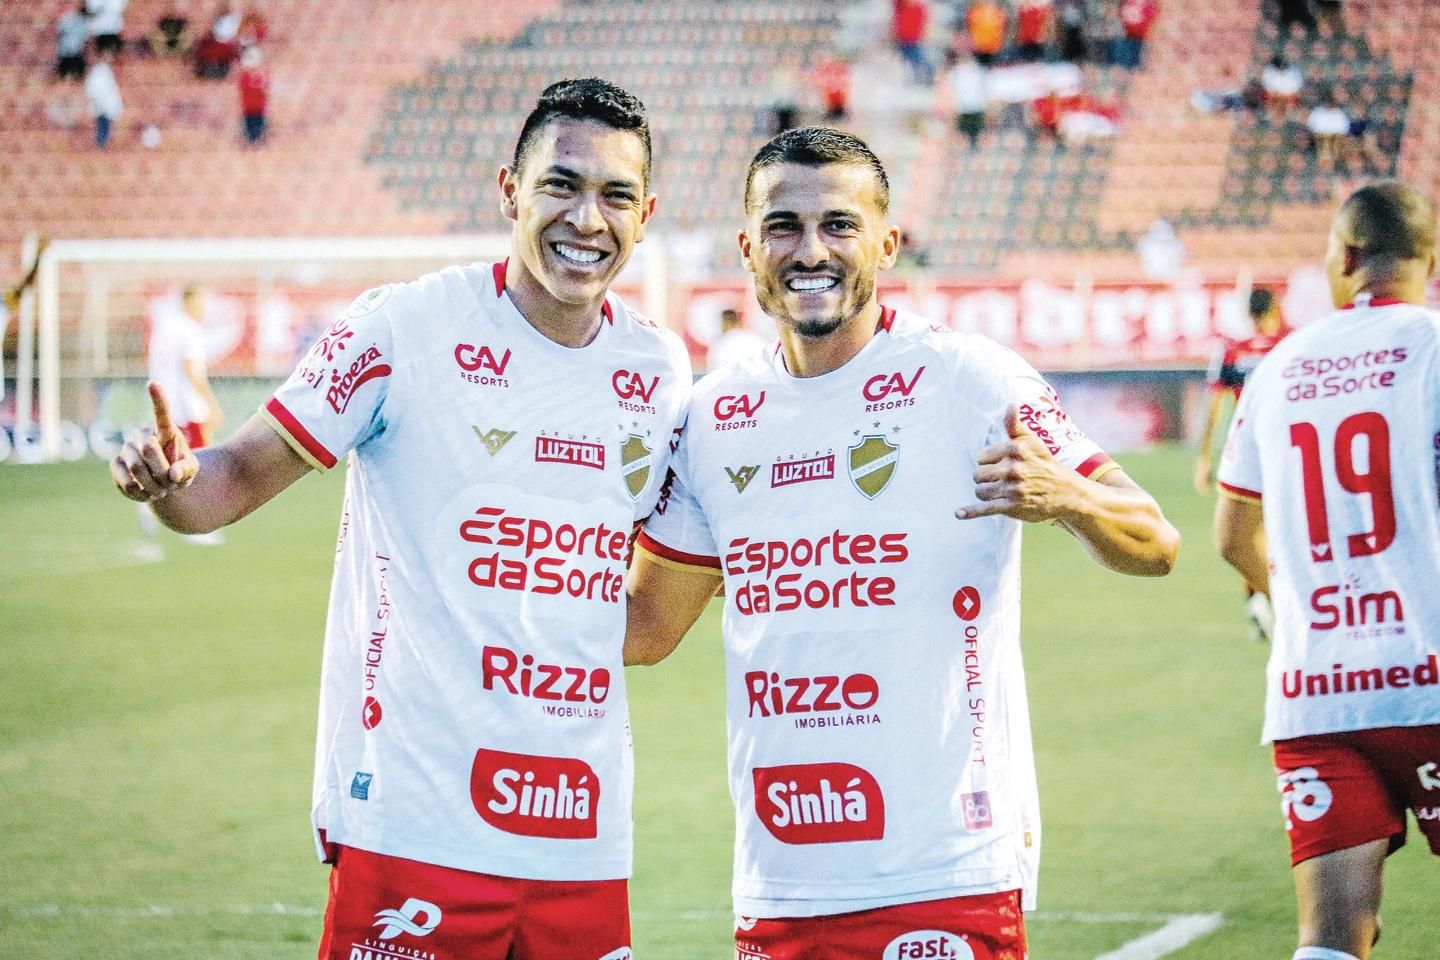 Após goleada, Goiás terá de se organizar para jogos em casa